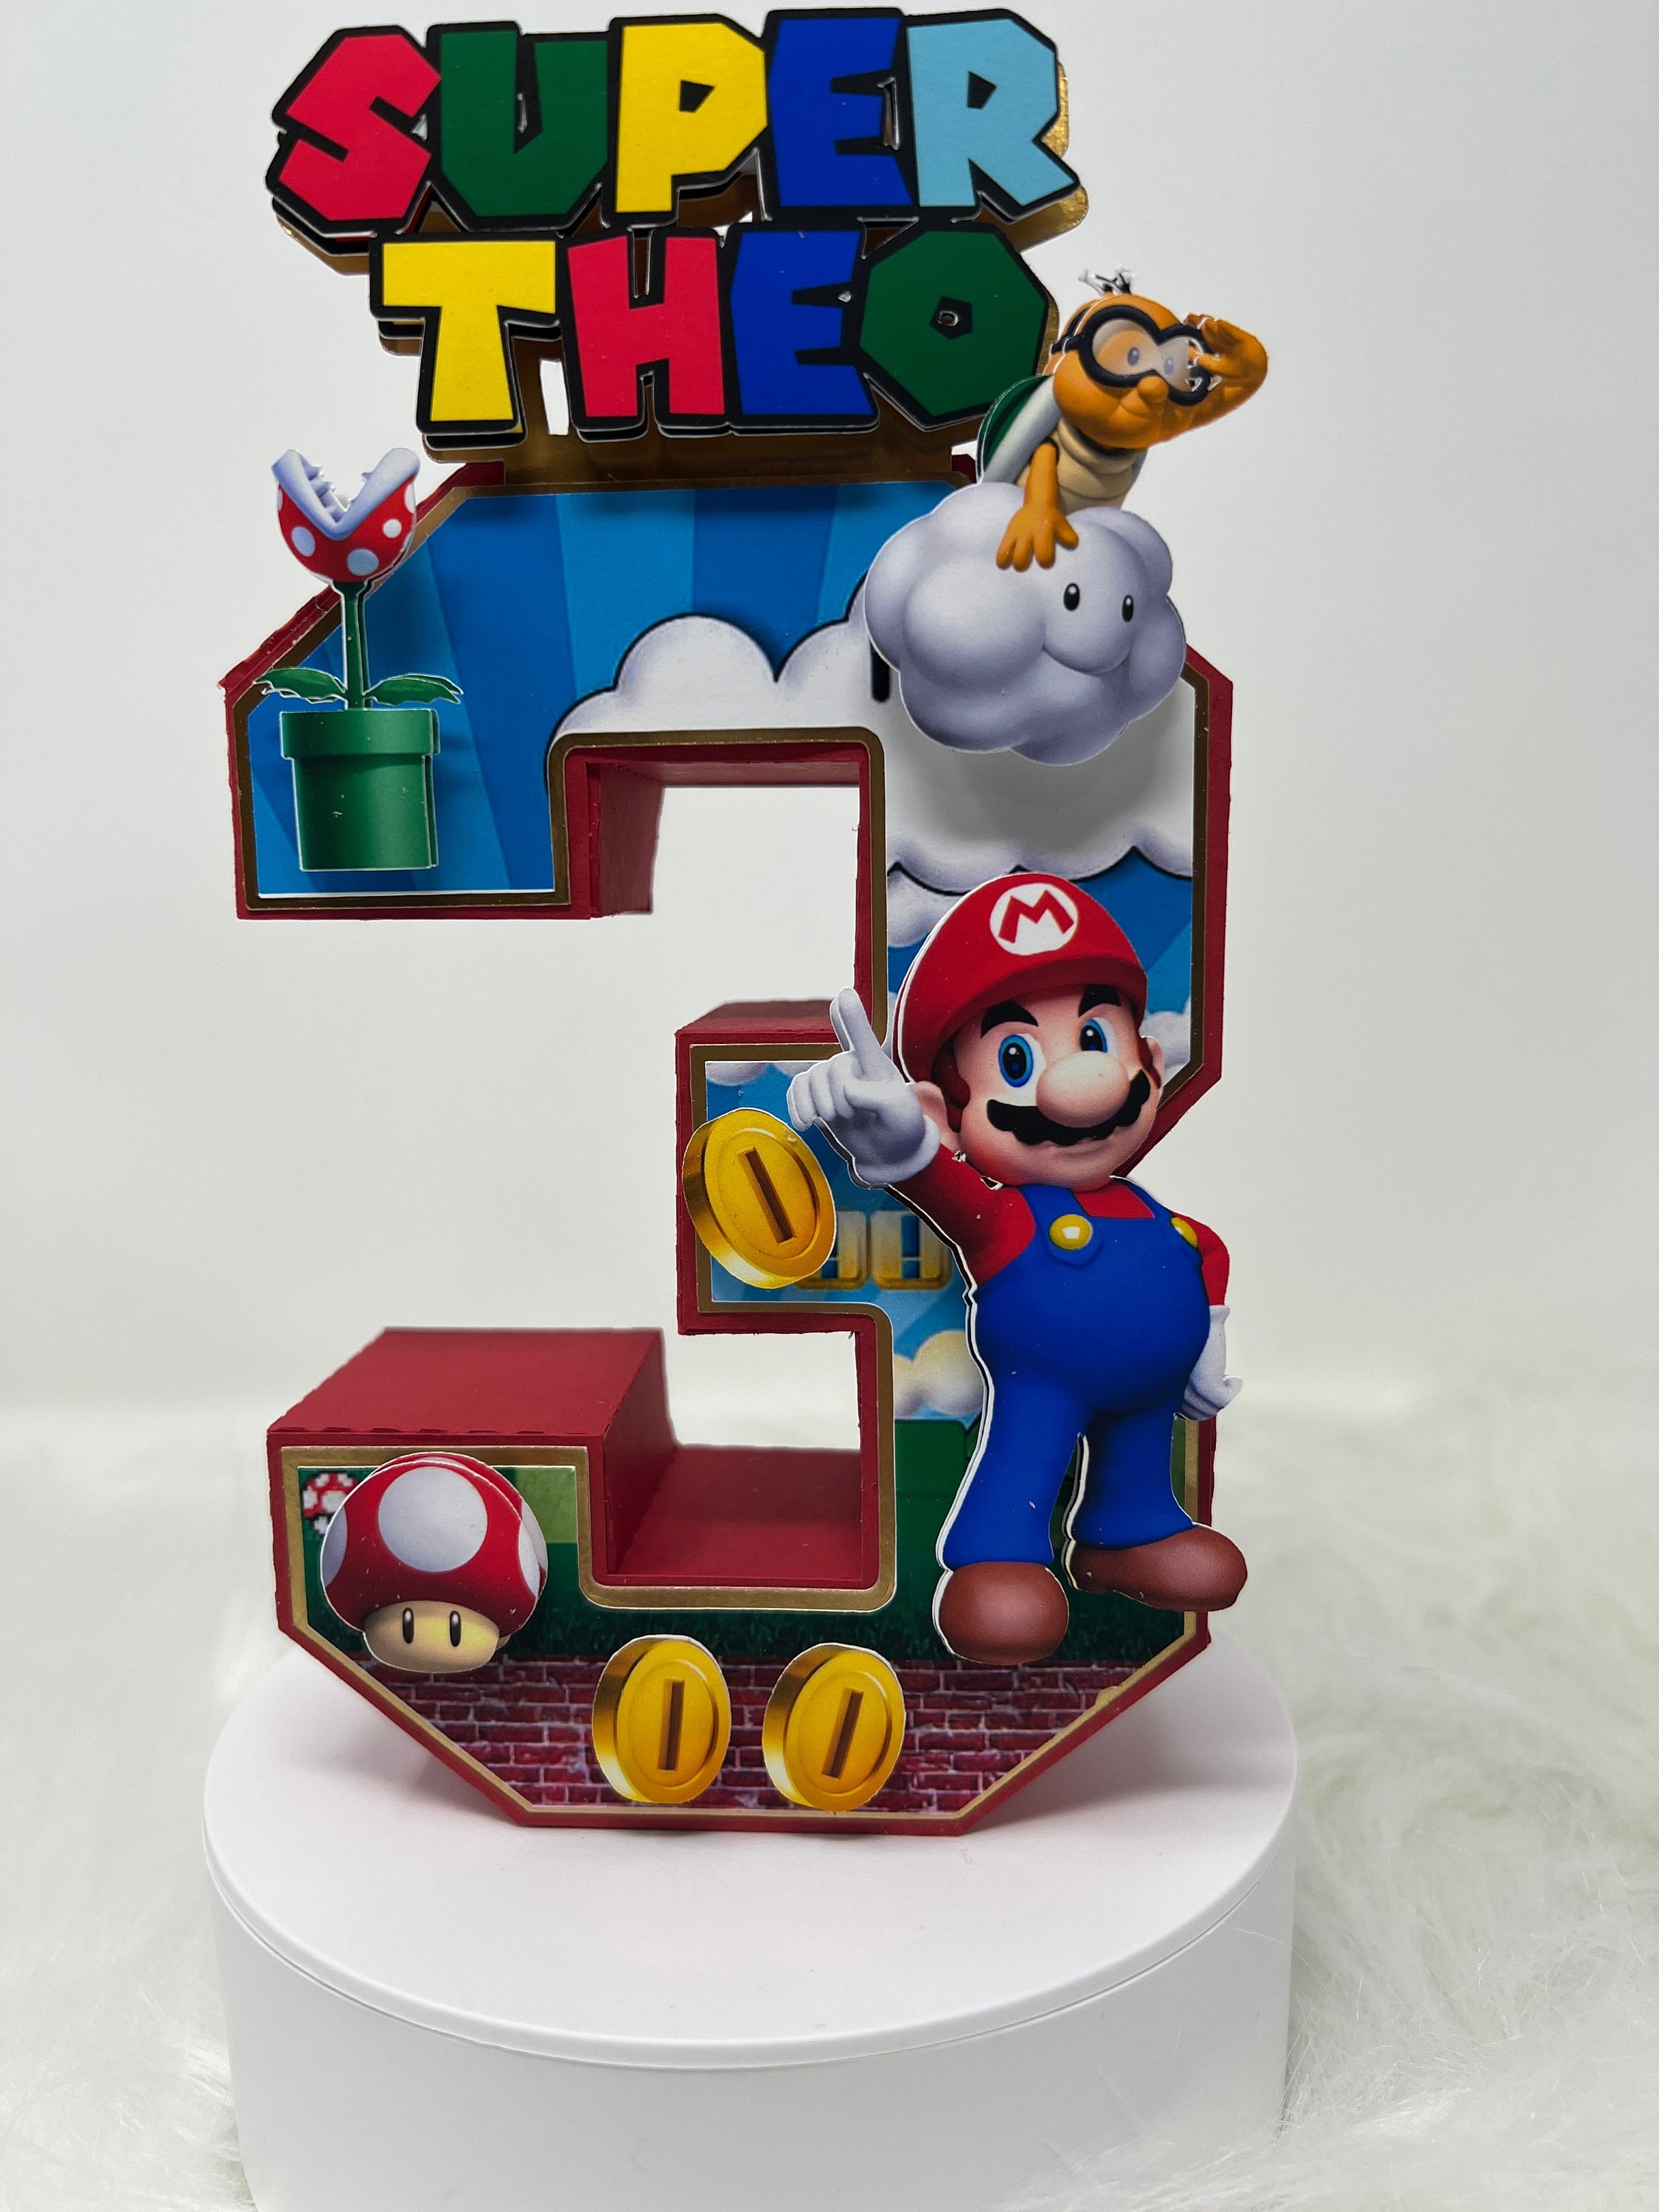 Striscione Super Mario Bros - 05 - carta cm 140x100 personalizzato